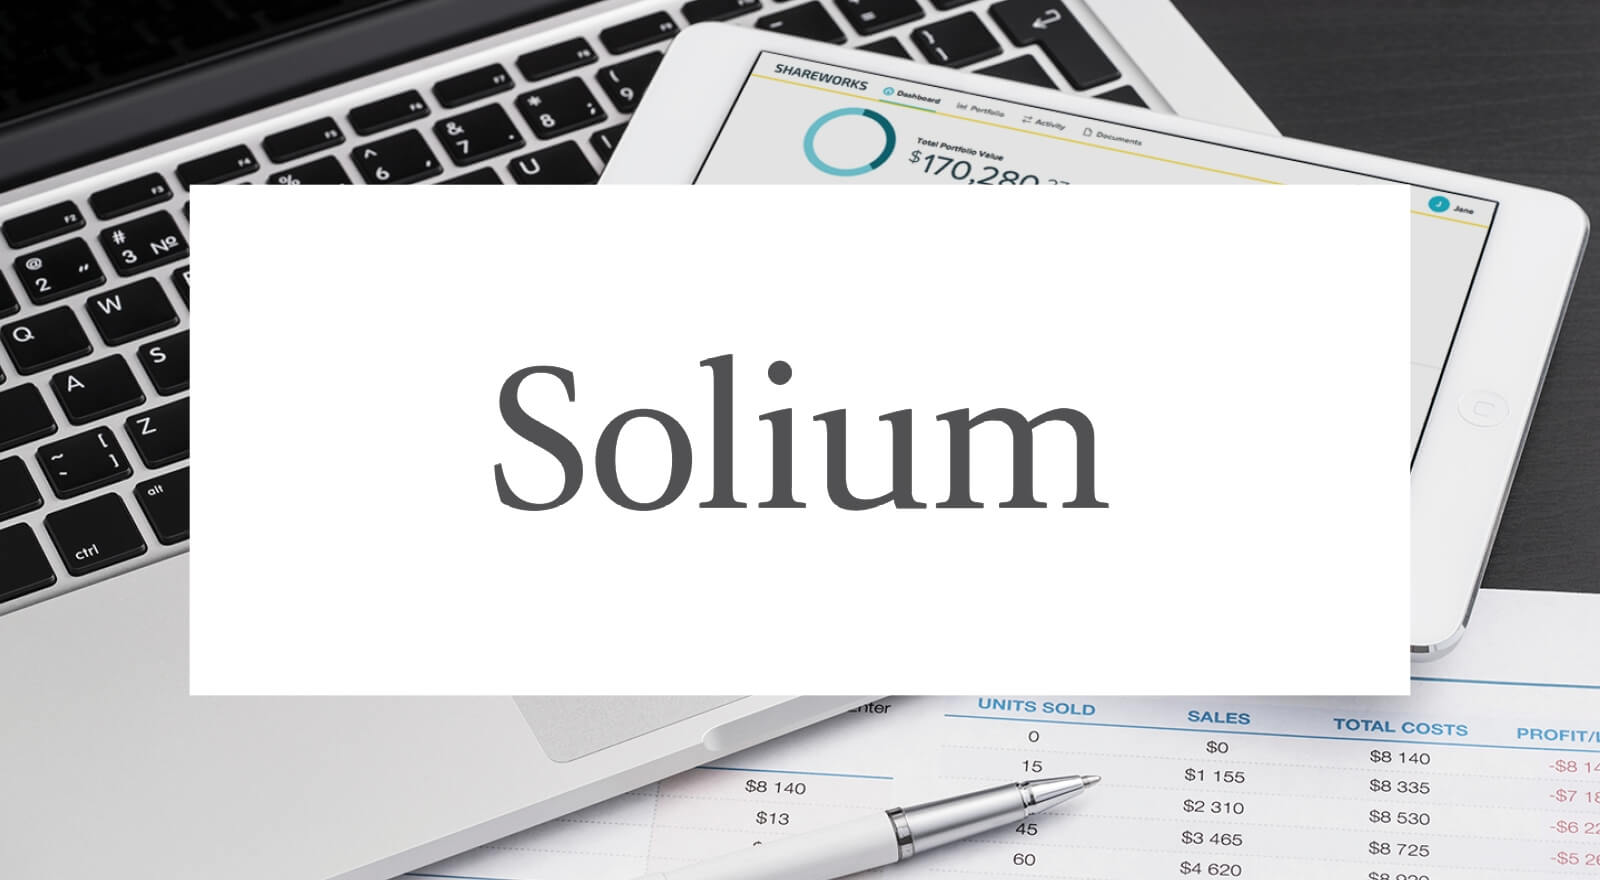 Solium - BlueJeans Case Study